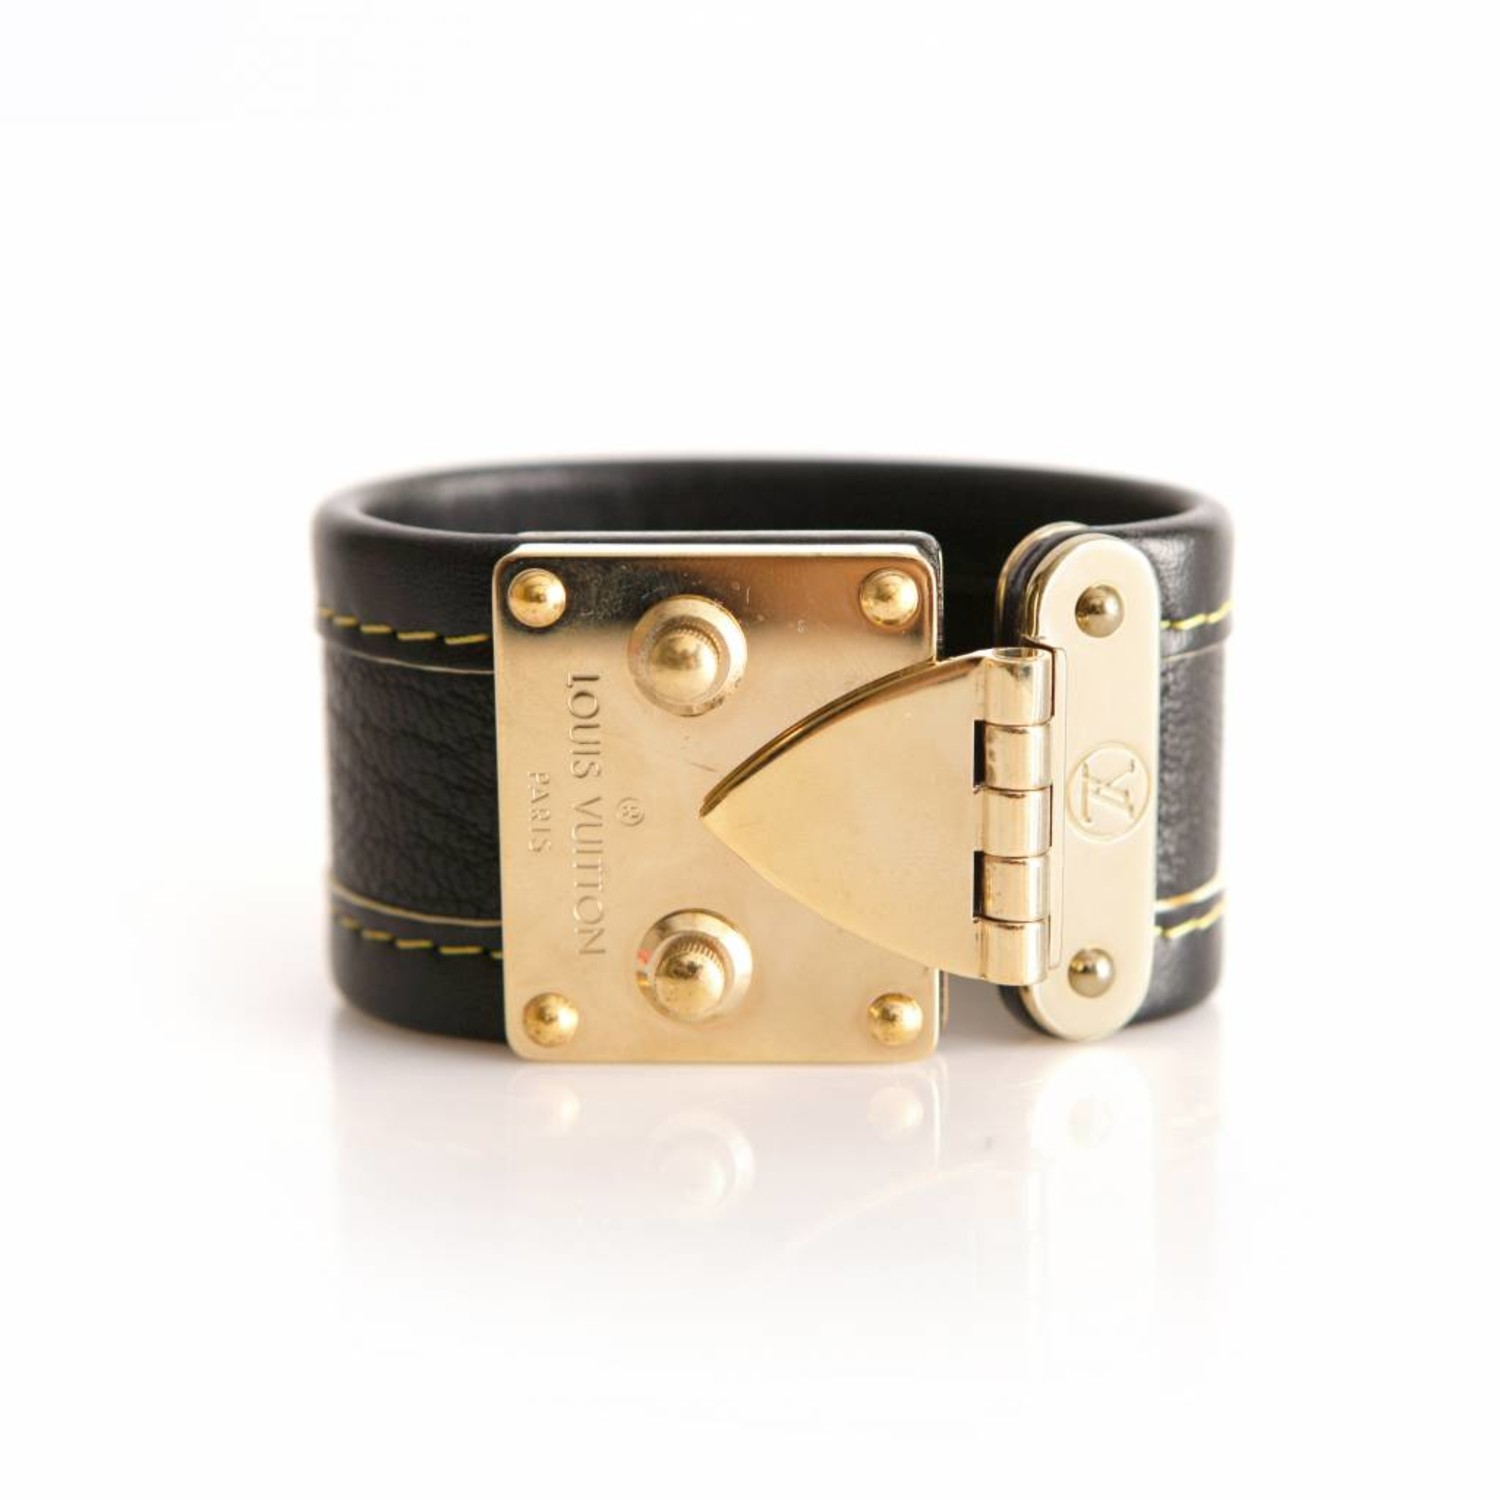 Authentic bracelet Louis Vuitton | eBay